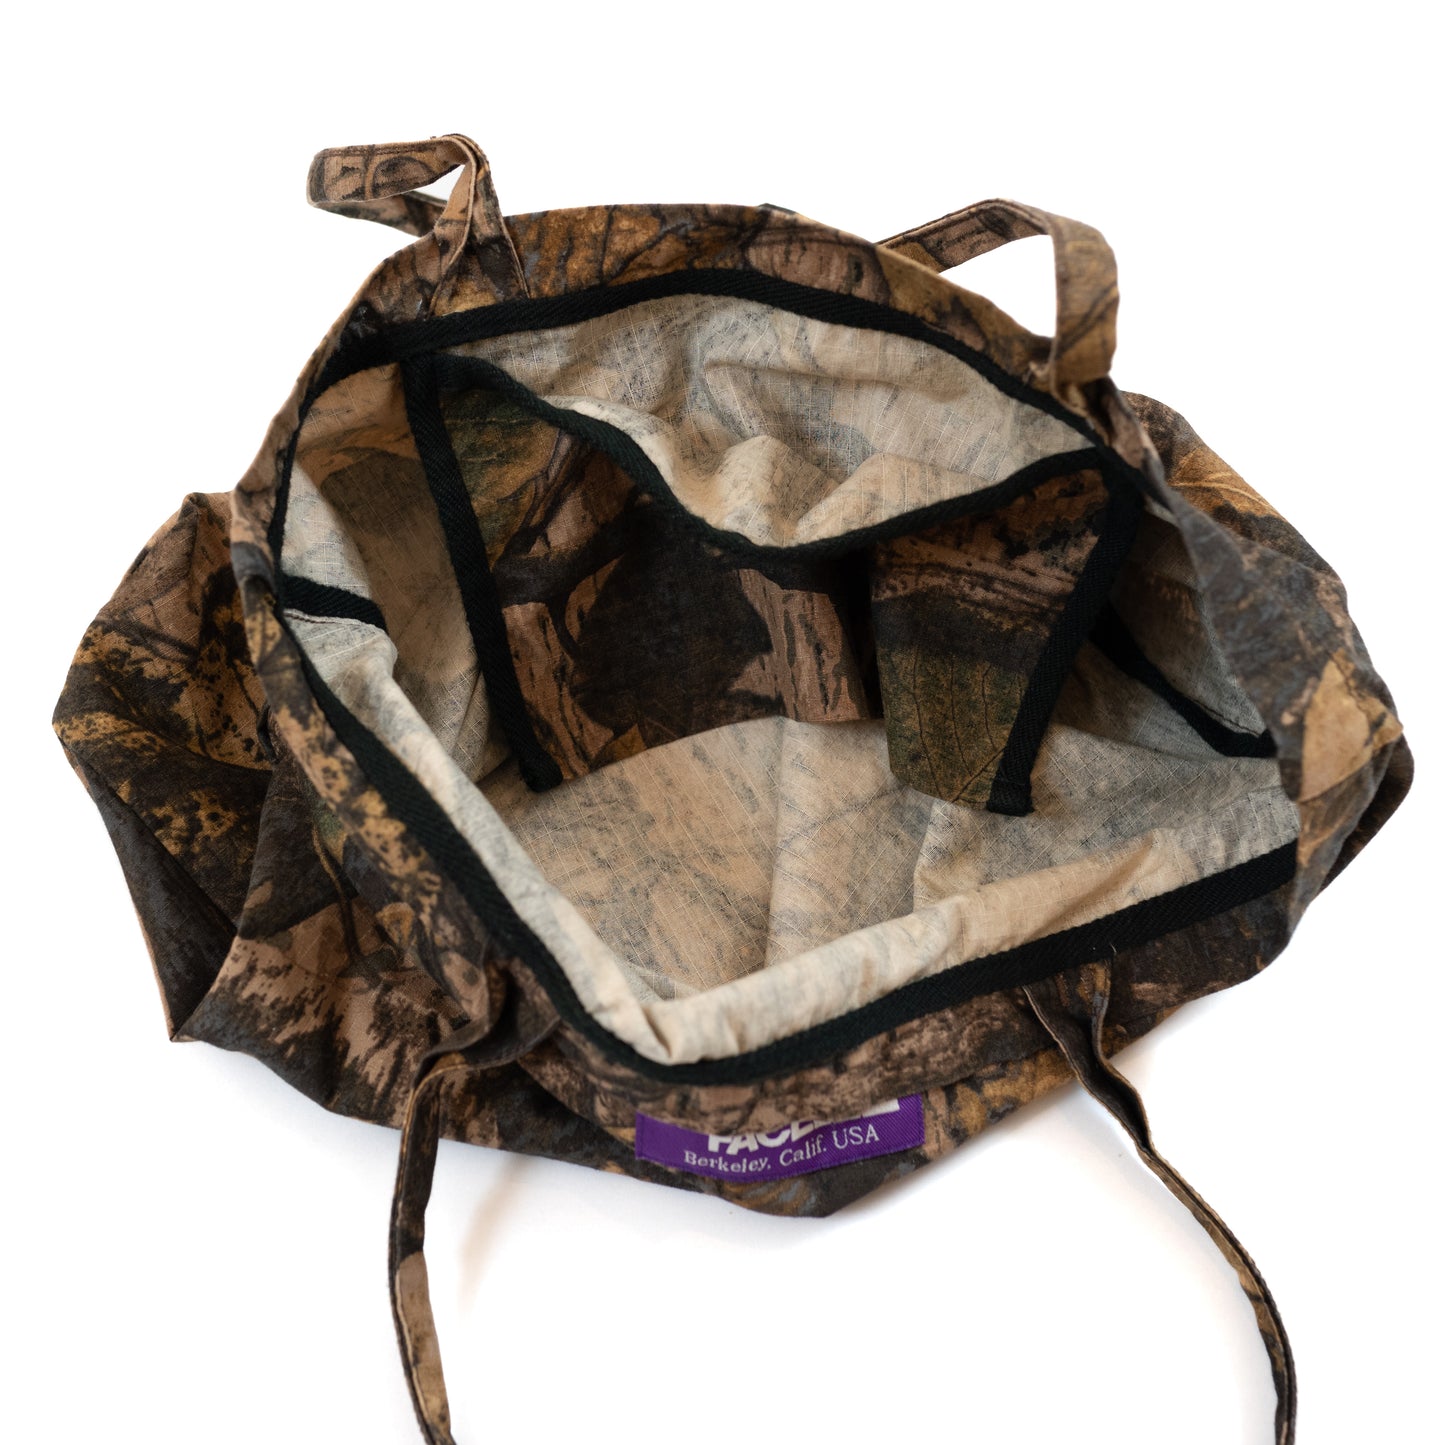 The North Face Purple Label Tree Camo Print Tote Bag